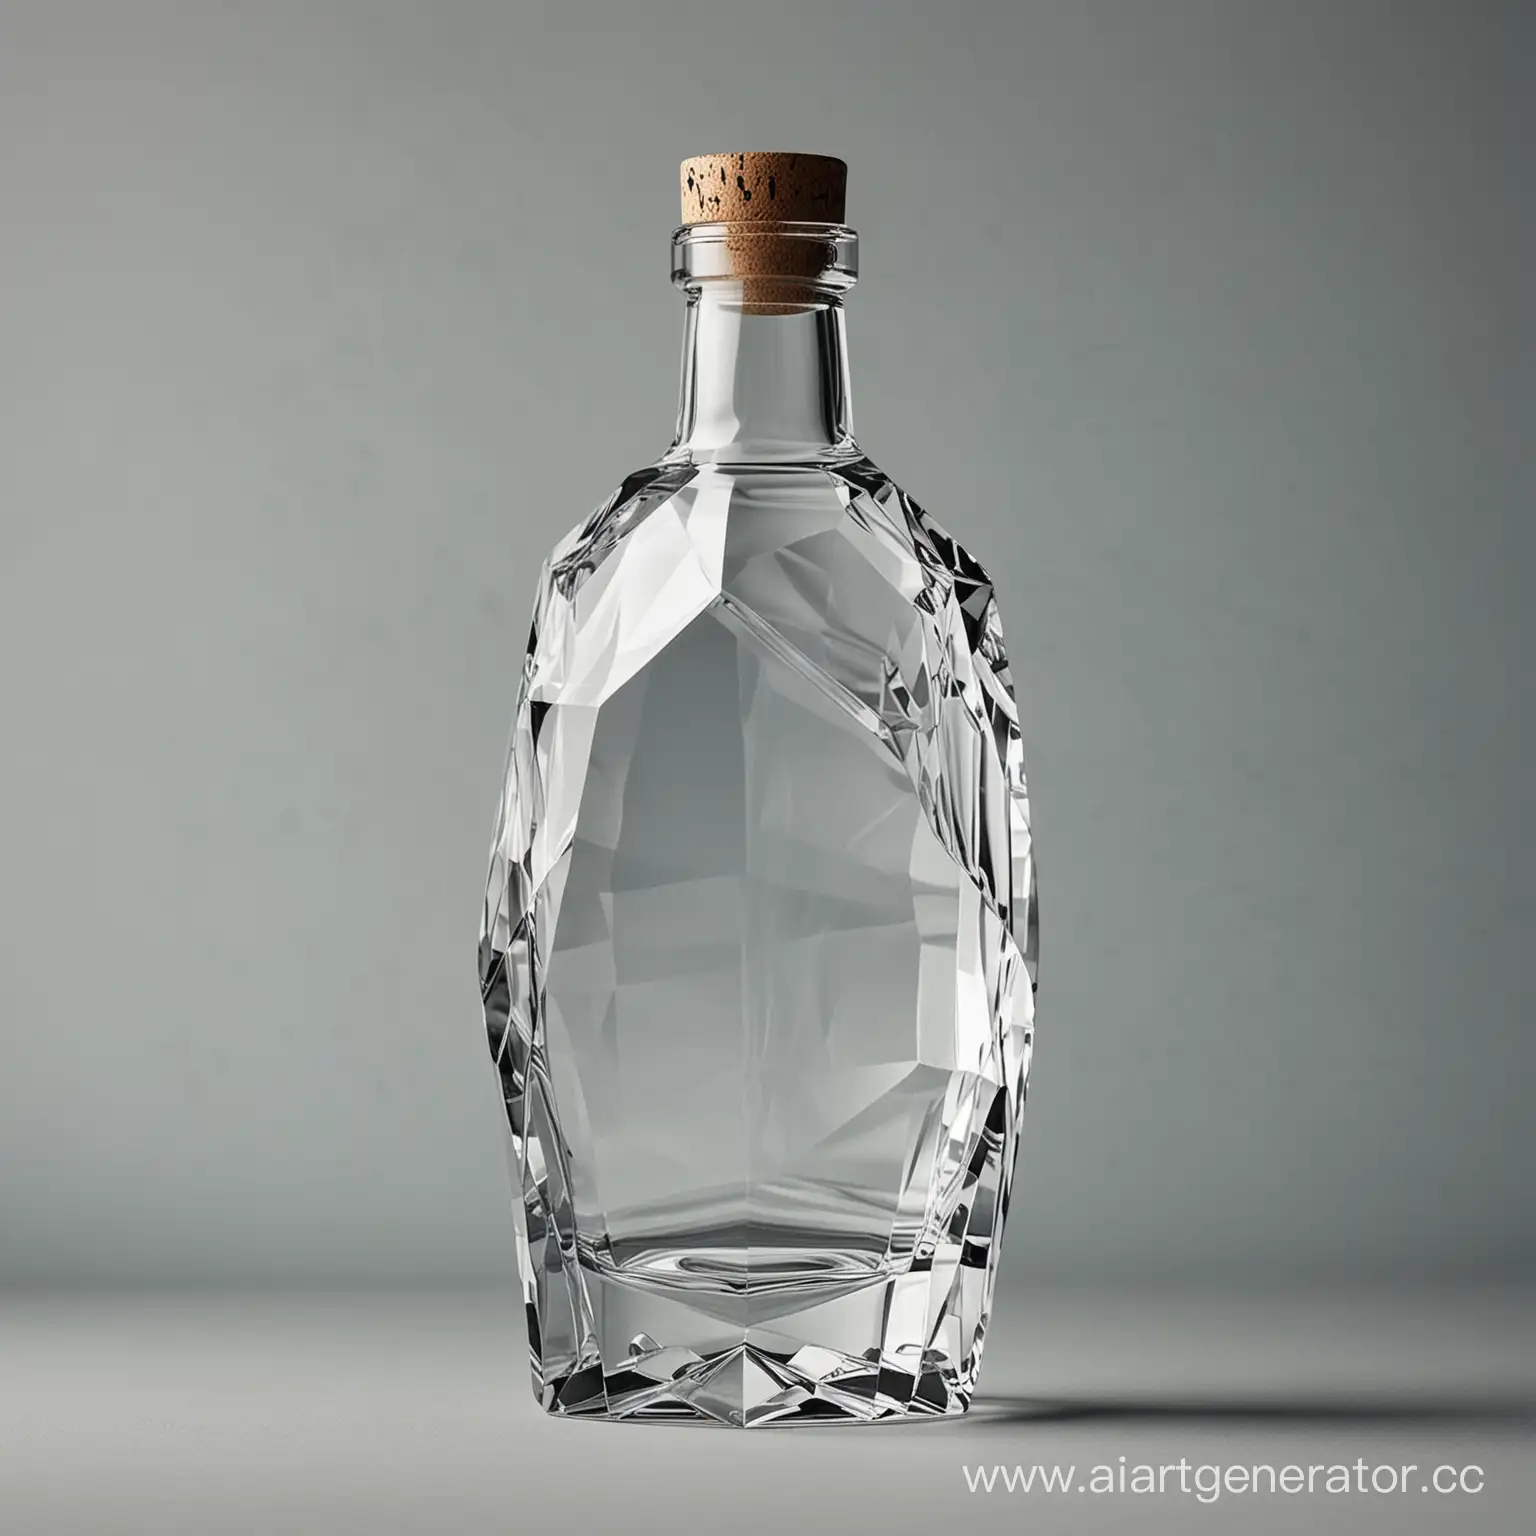 Sharp-Angles-Vodka-Bottle-Rendered-in-Brutal-Faceted-Style